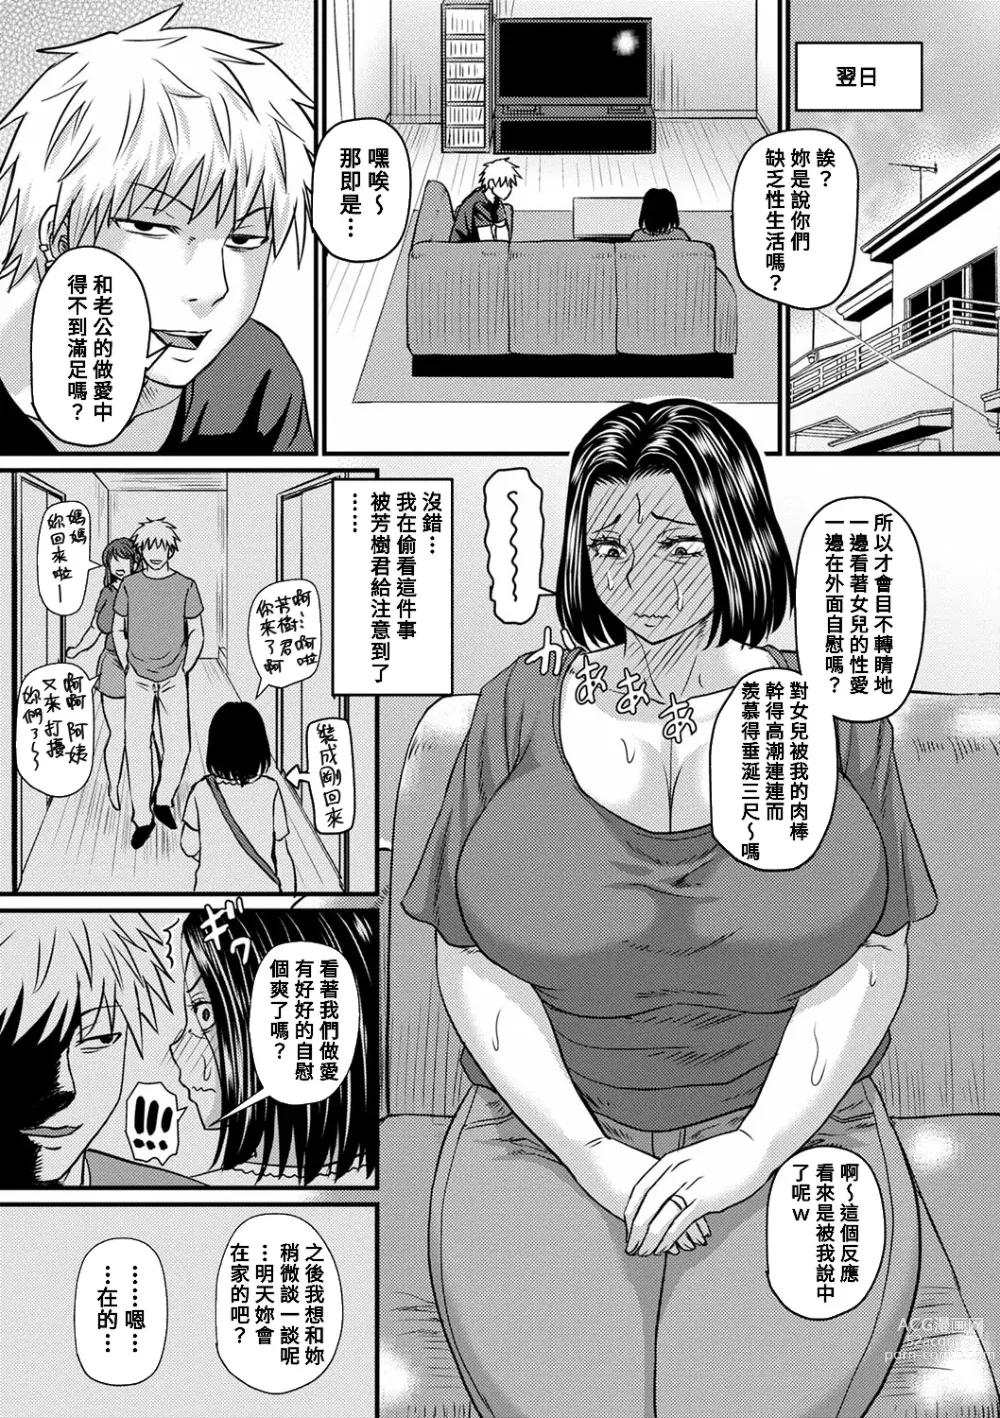 Page 7 of manga Mitsuyo-san no Shiawase Sex